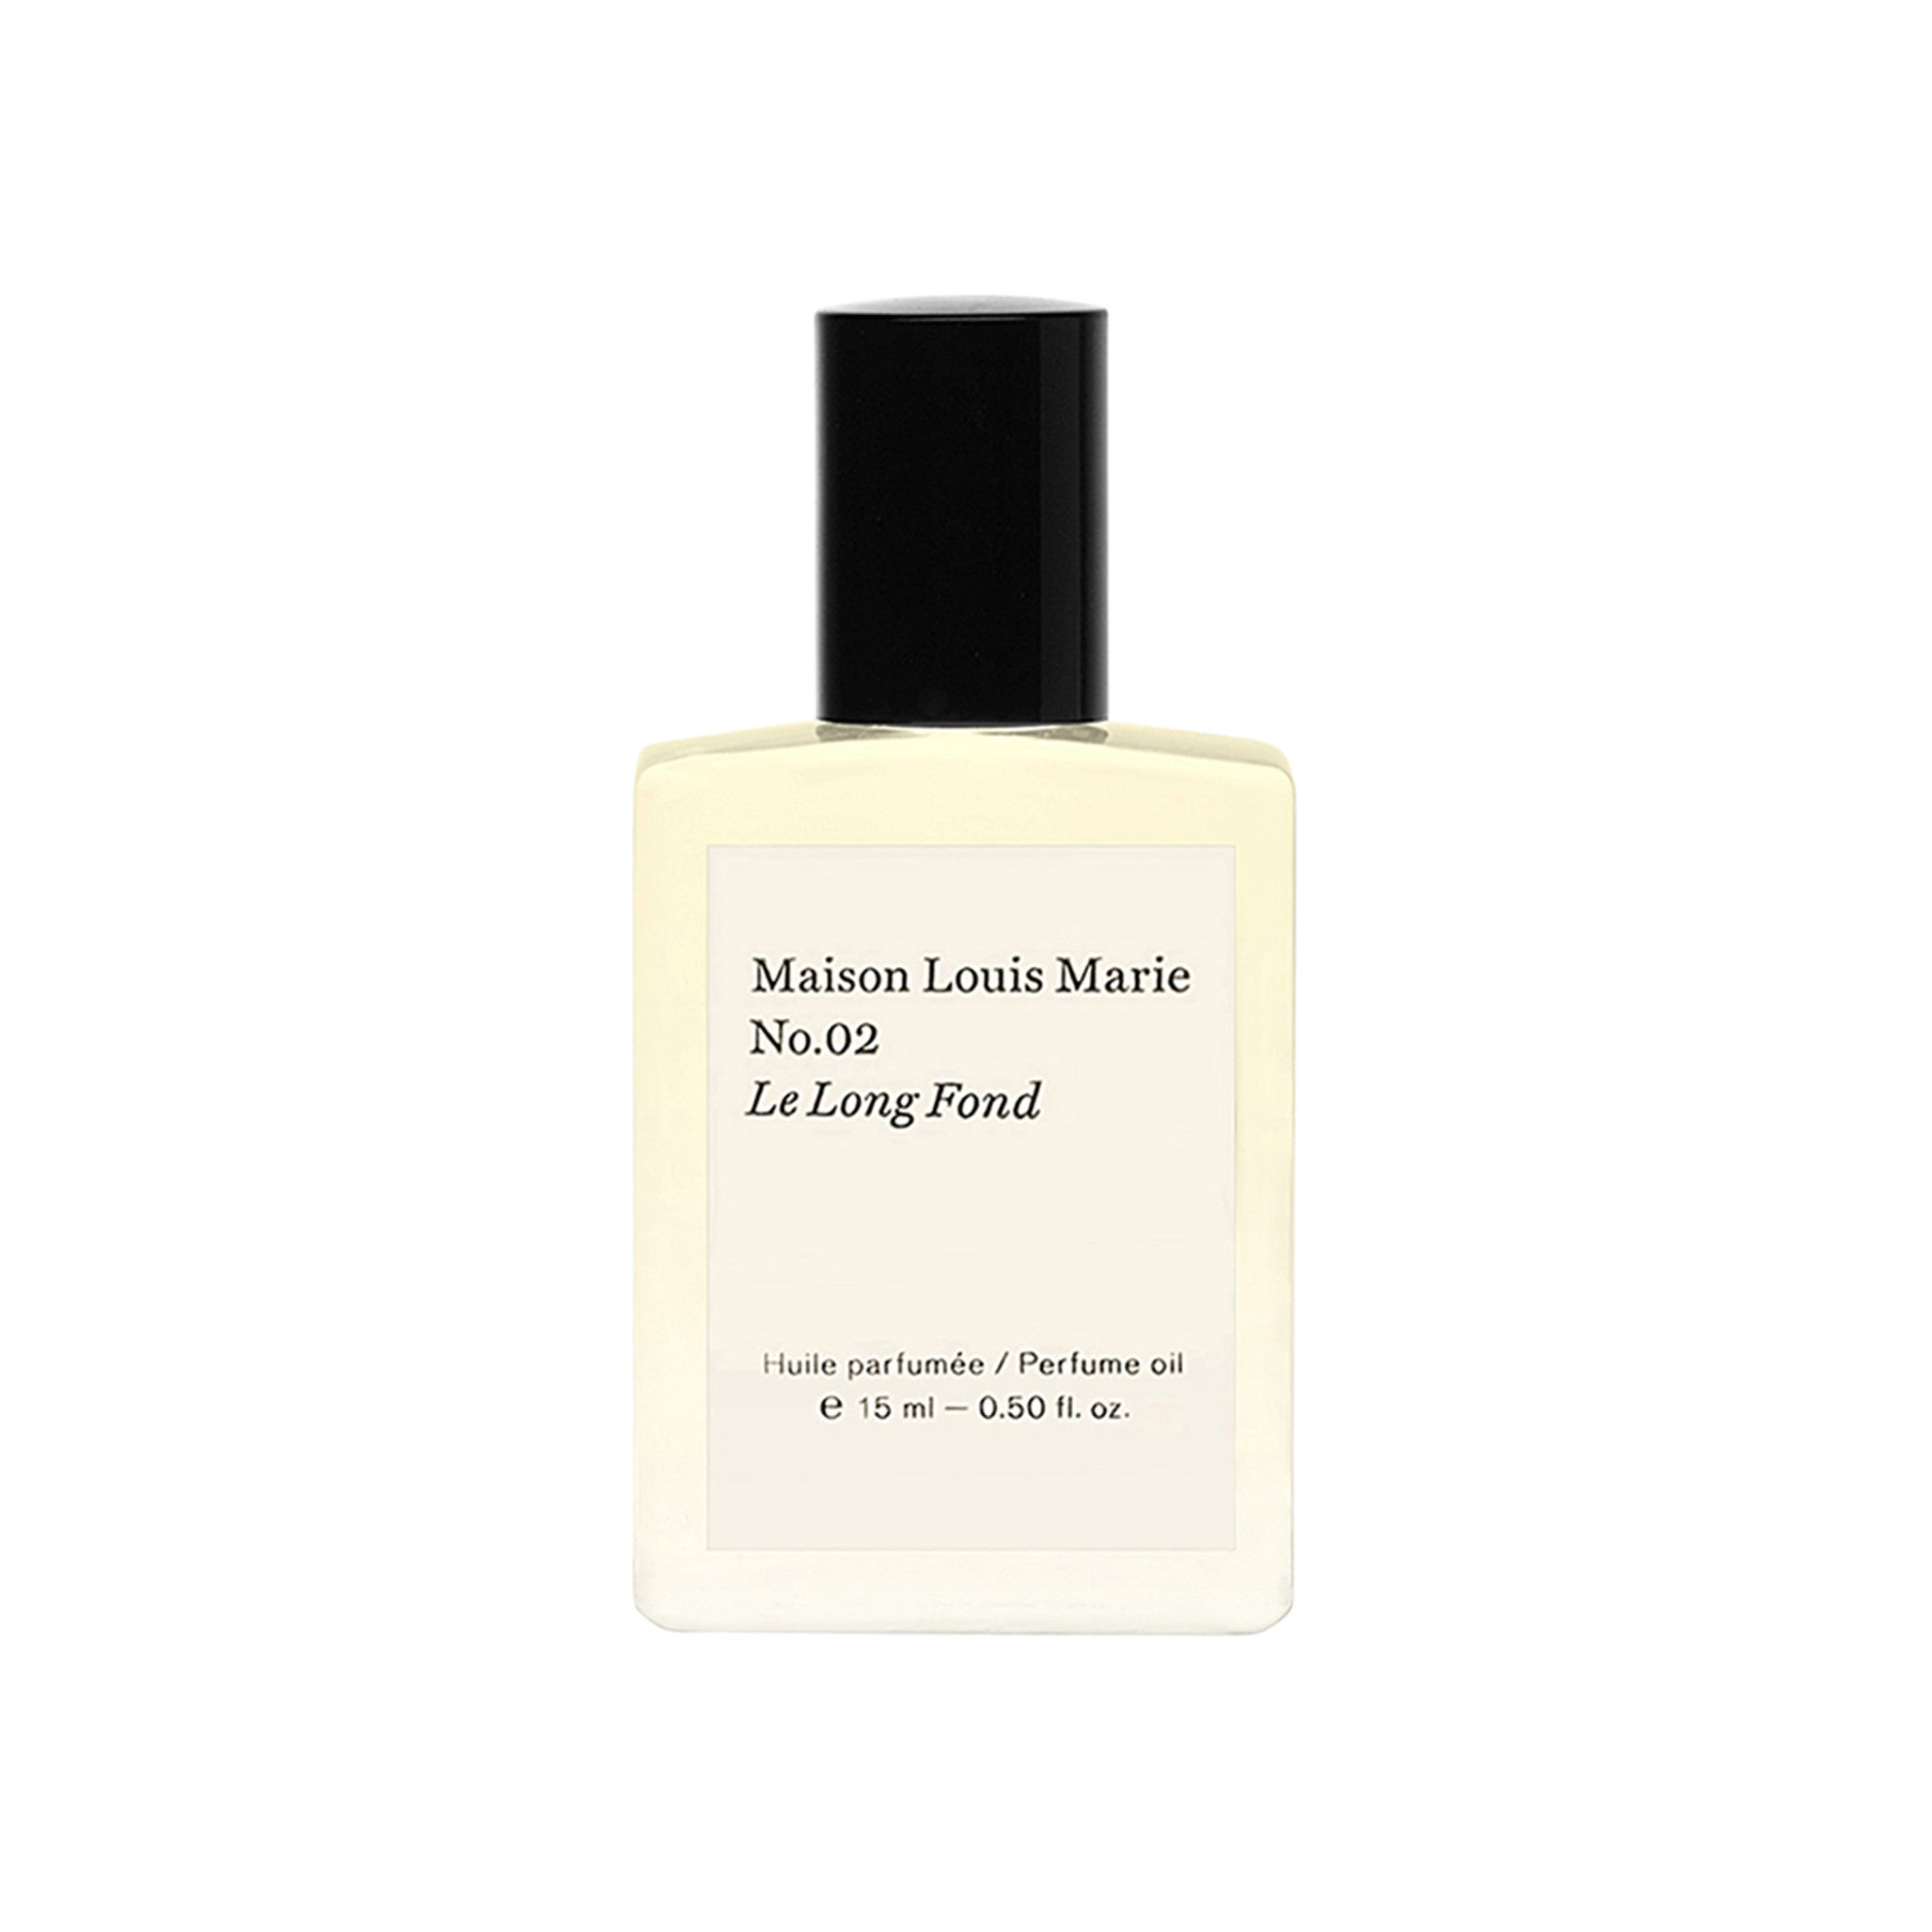 Maison Louis Marie No.02 Le Long Fond Perfume Oil main image.